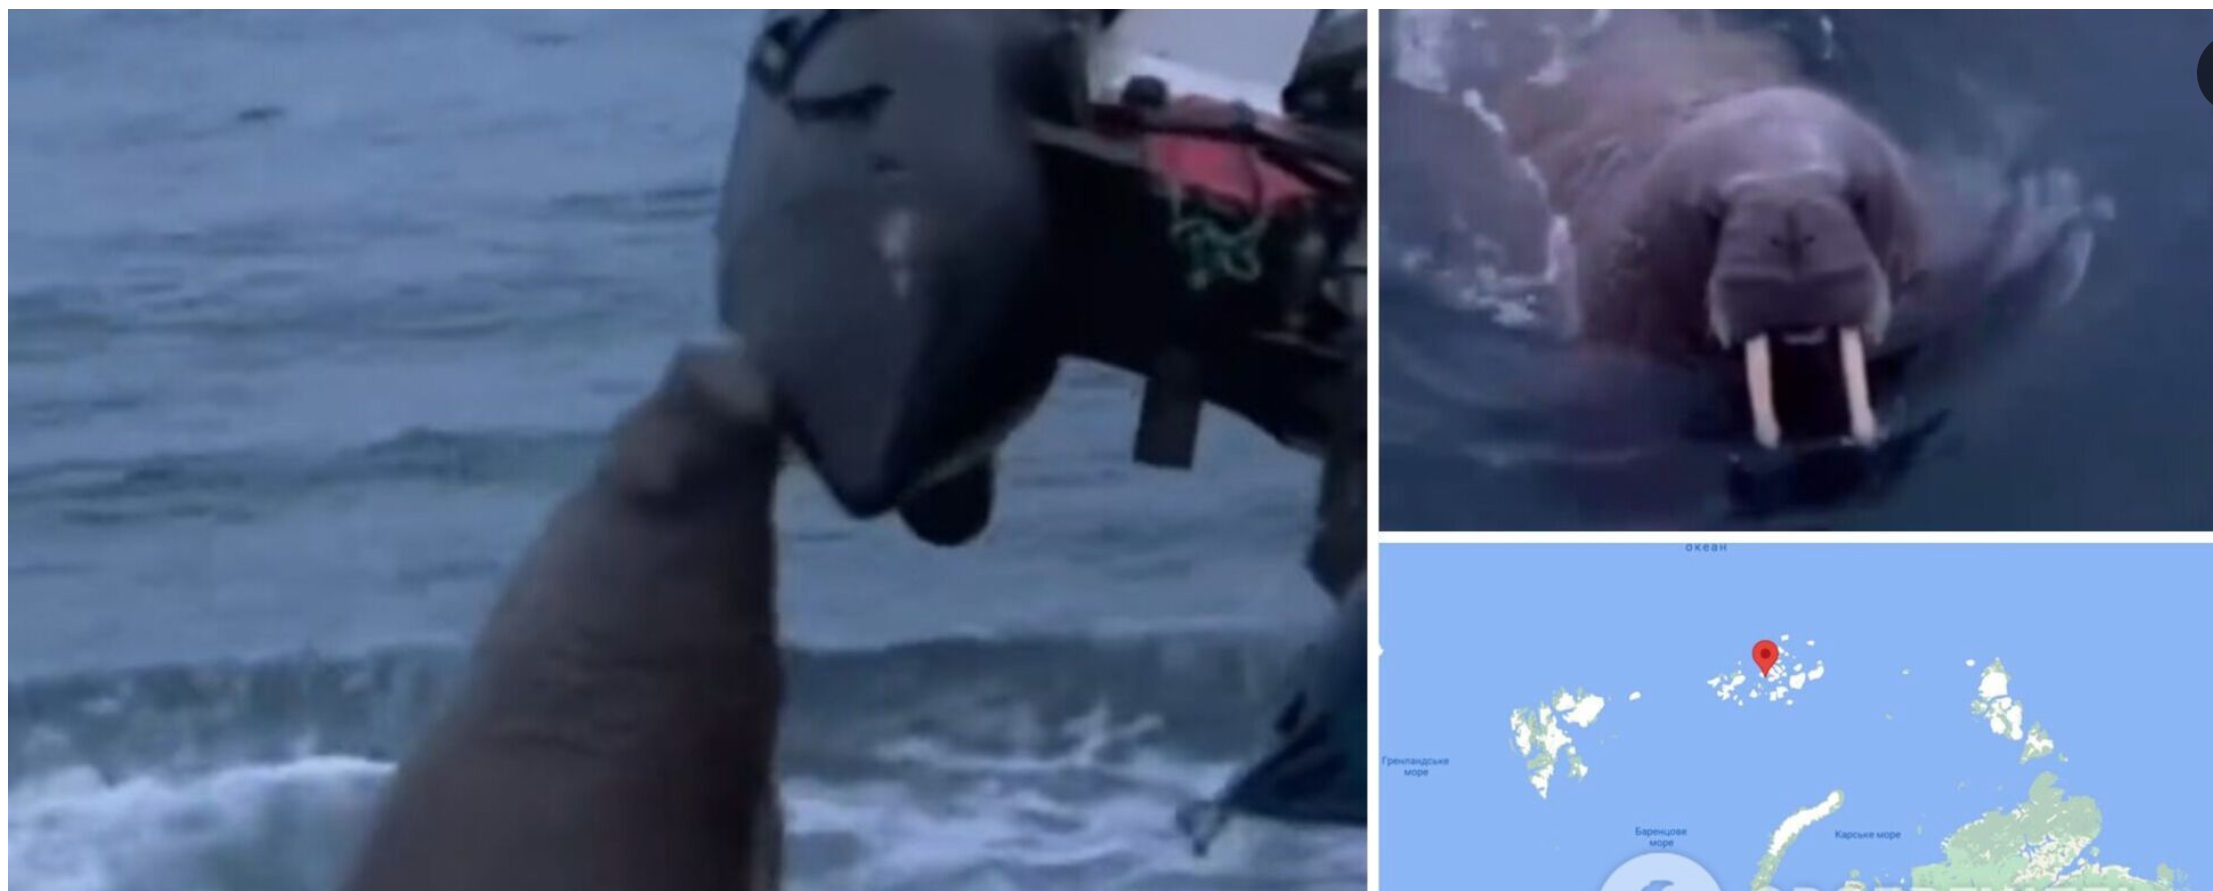 “Захищала свою територію”: моржиха напала на човен росіян у Північному Льодовитому океані. Відео